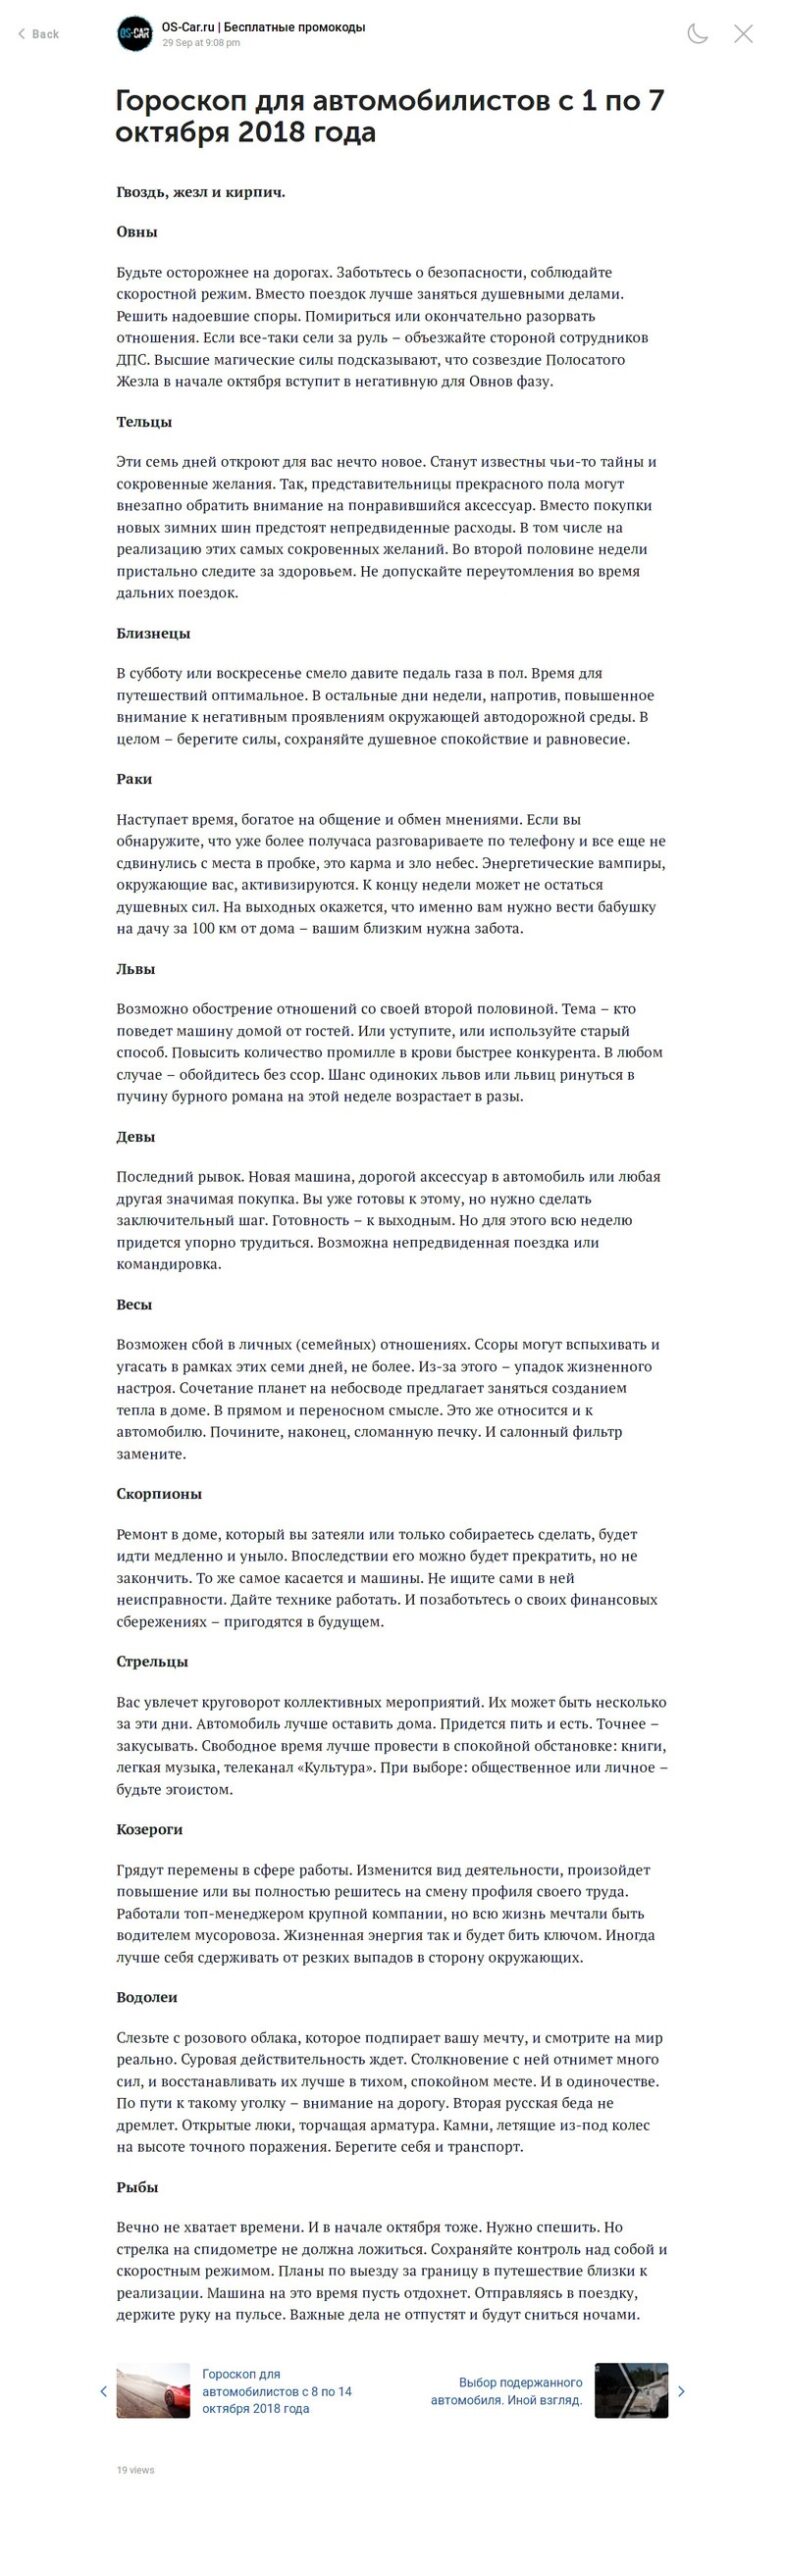 Пост для группы ВКонтакте. Гороскоп для автомобилистов